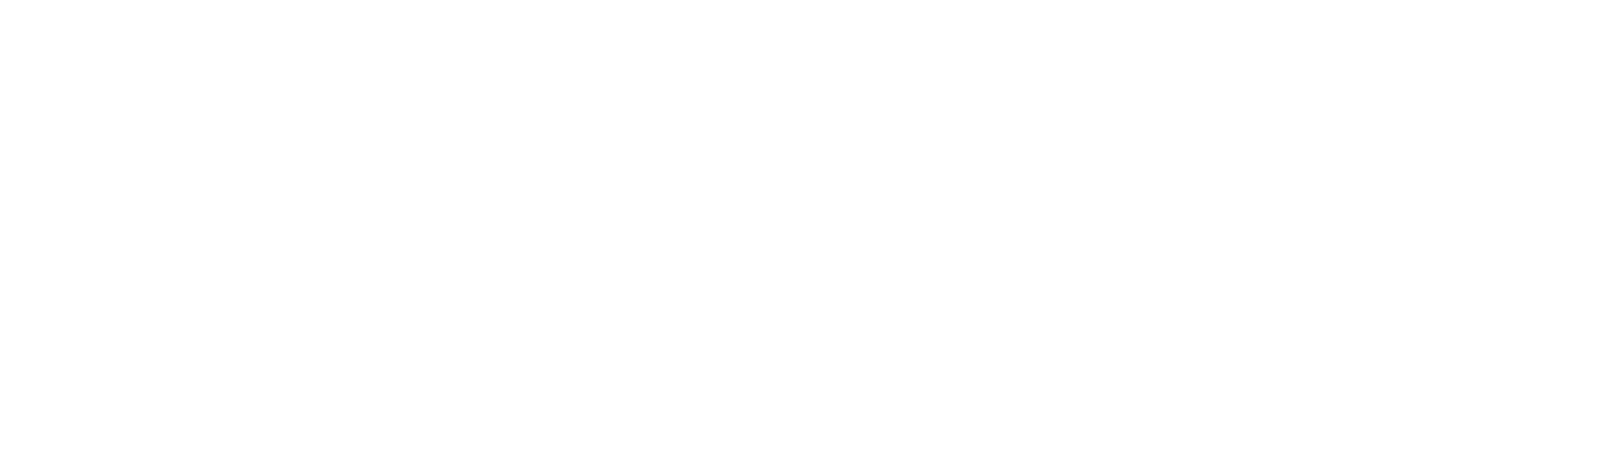 novo-foundation